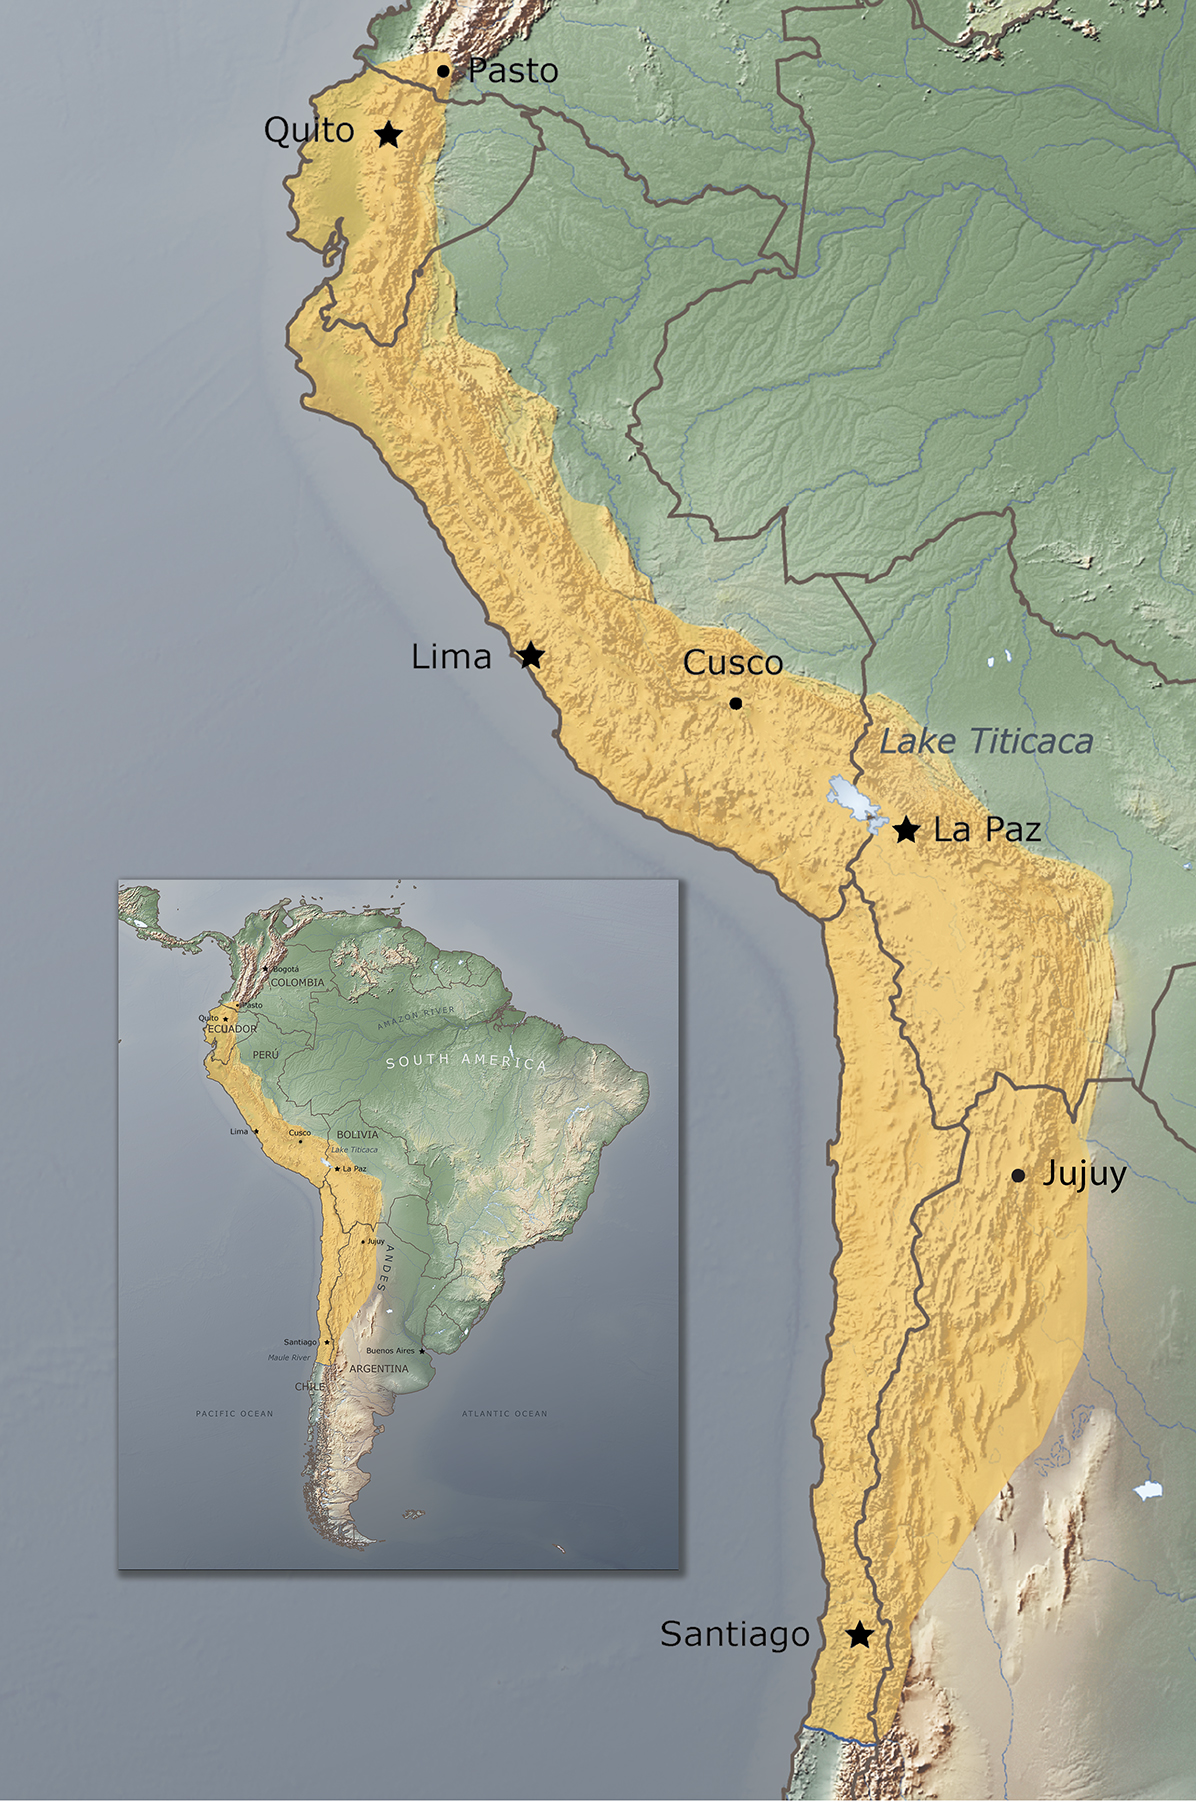 Mapa que señala la extensión del imperio inca y la zona de habla quechua.